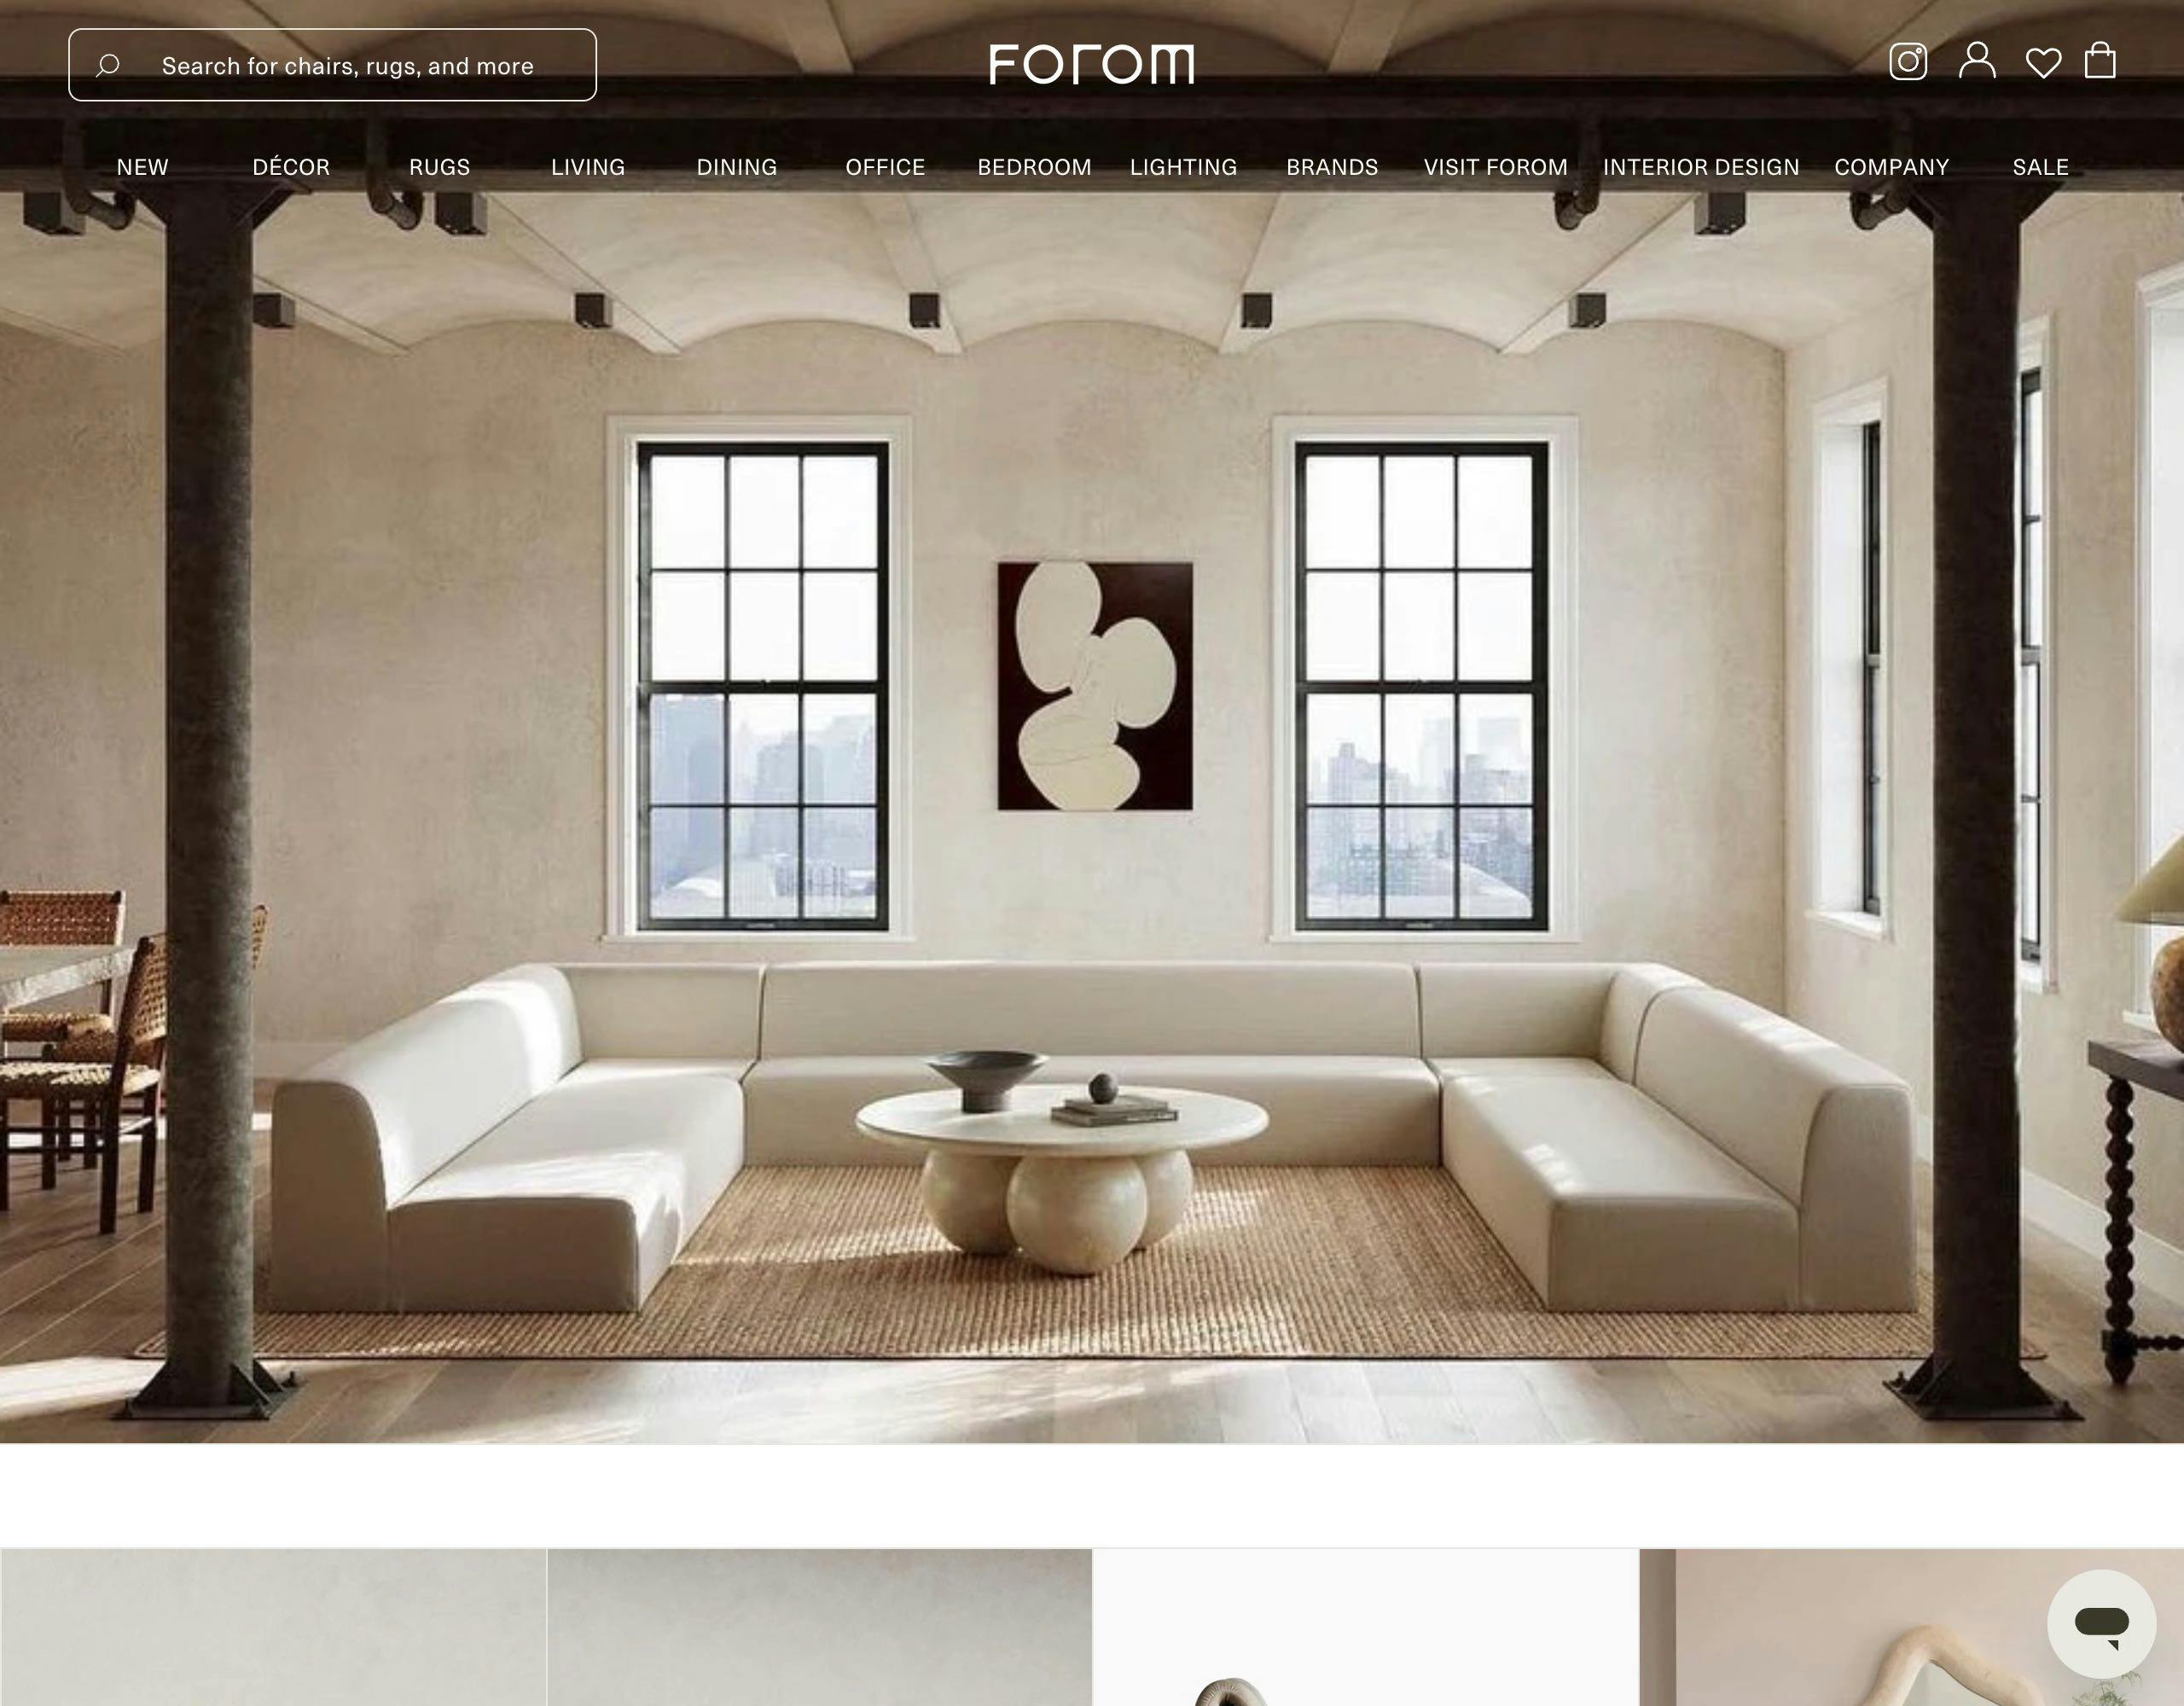 Forom website